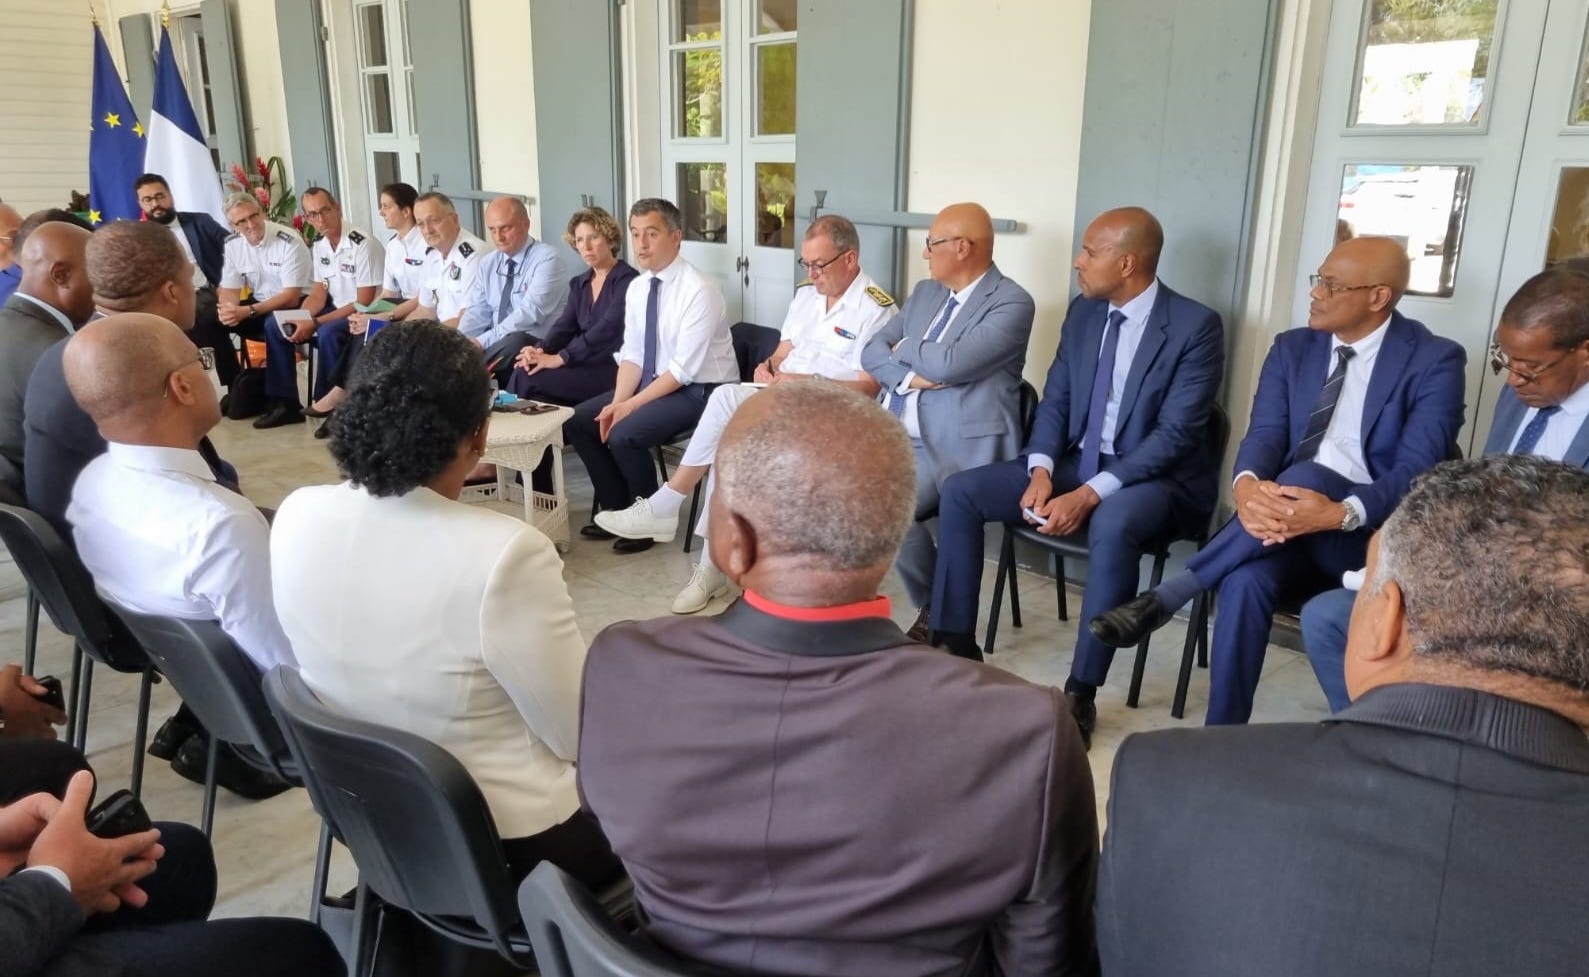     Après ses annonces sur la sécurité en Guadeloupe, Gérald Darmanin s'engage auprès des élus

